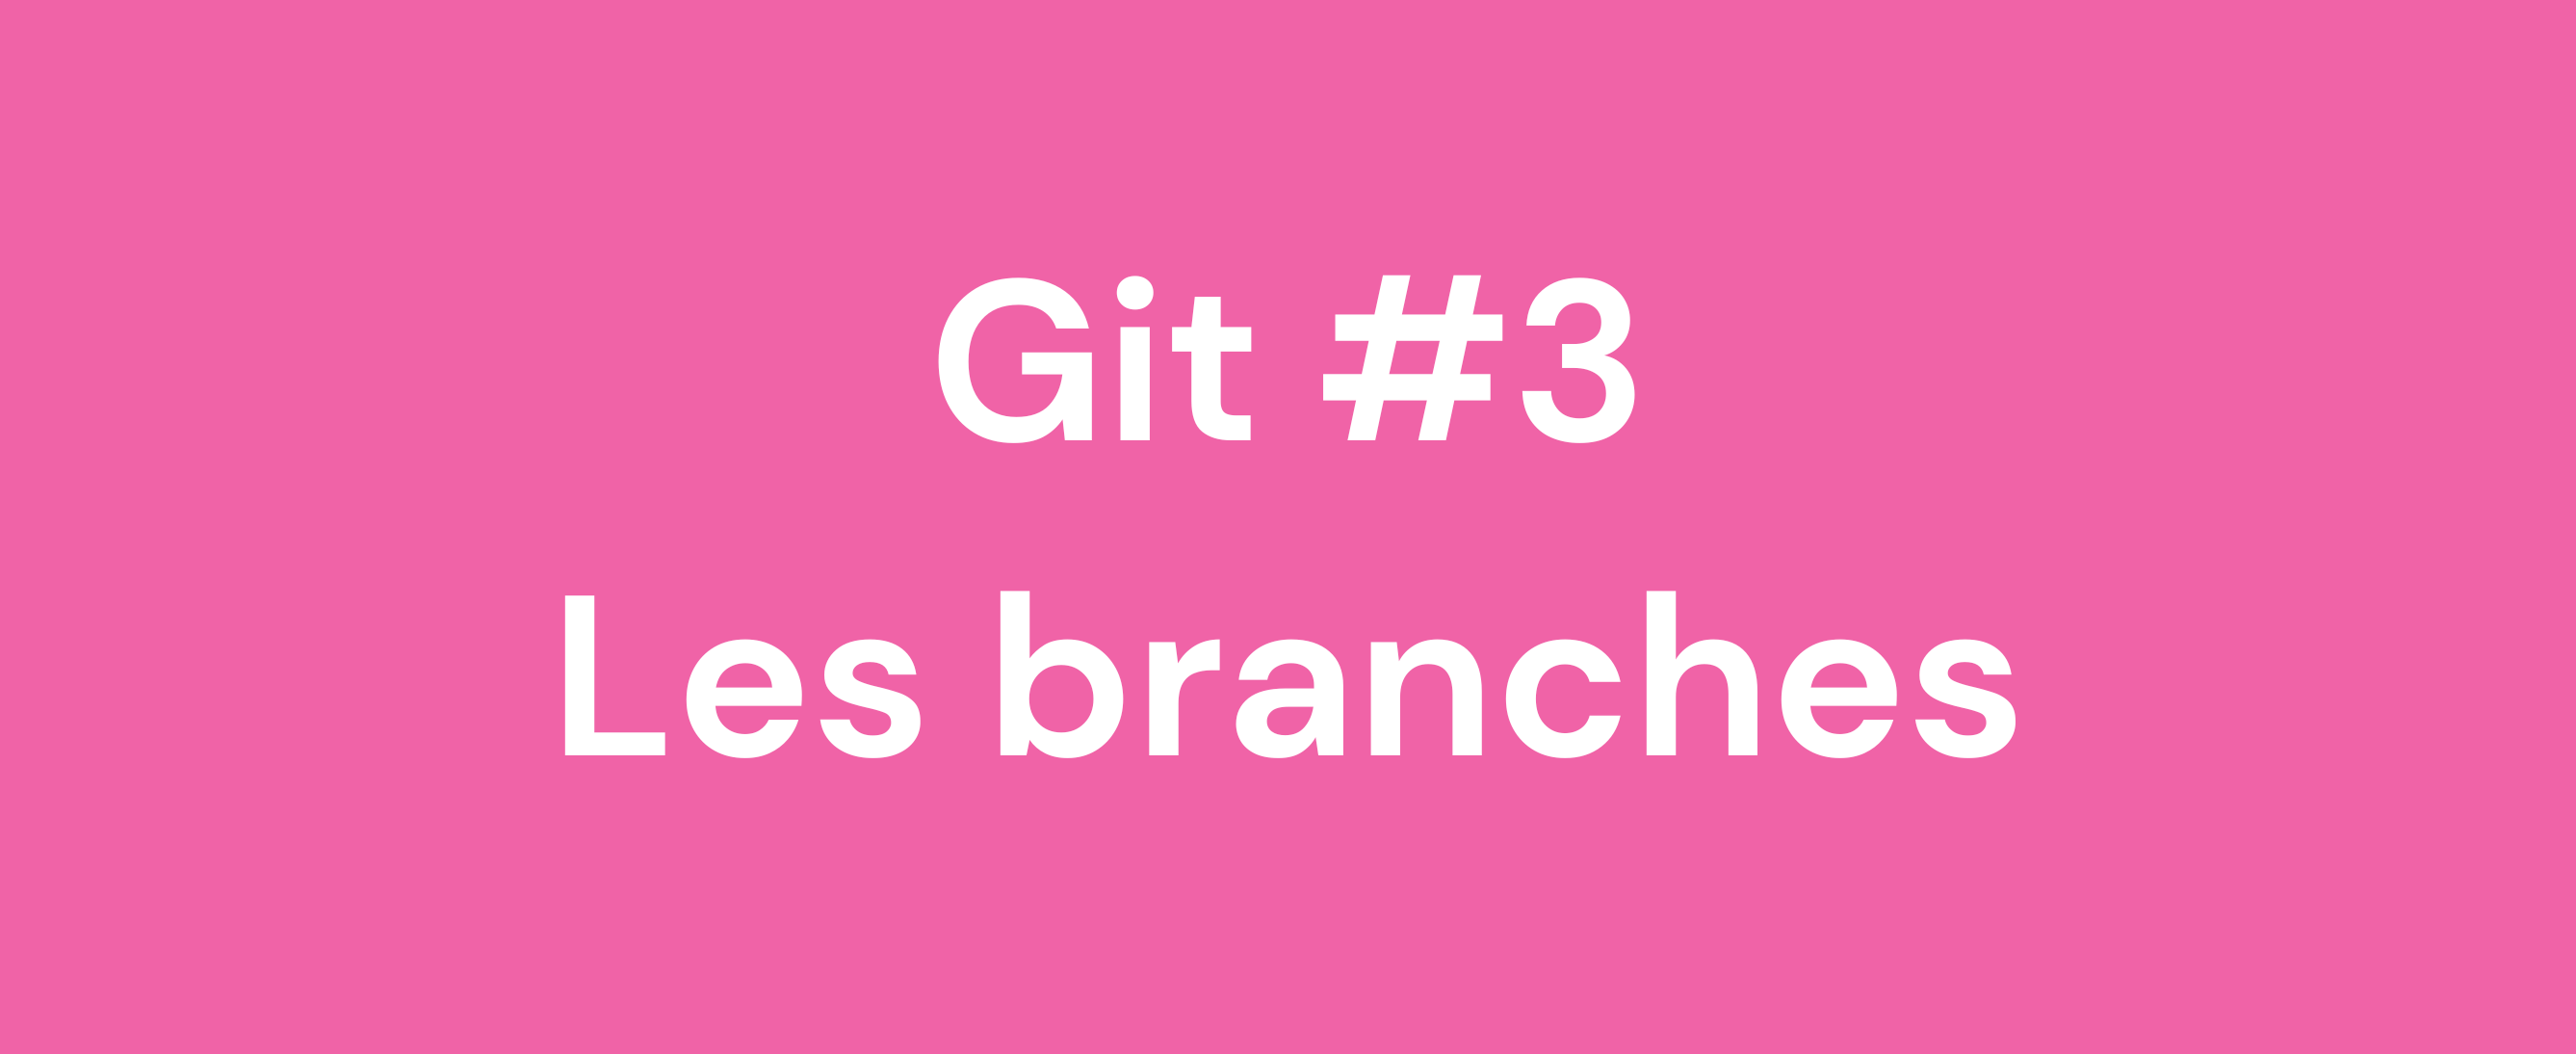 Les branches Git